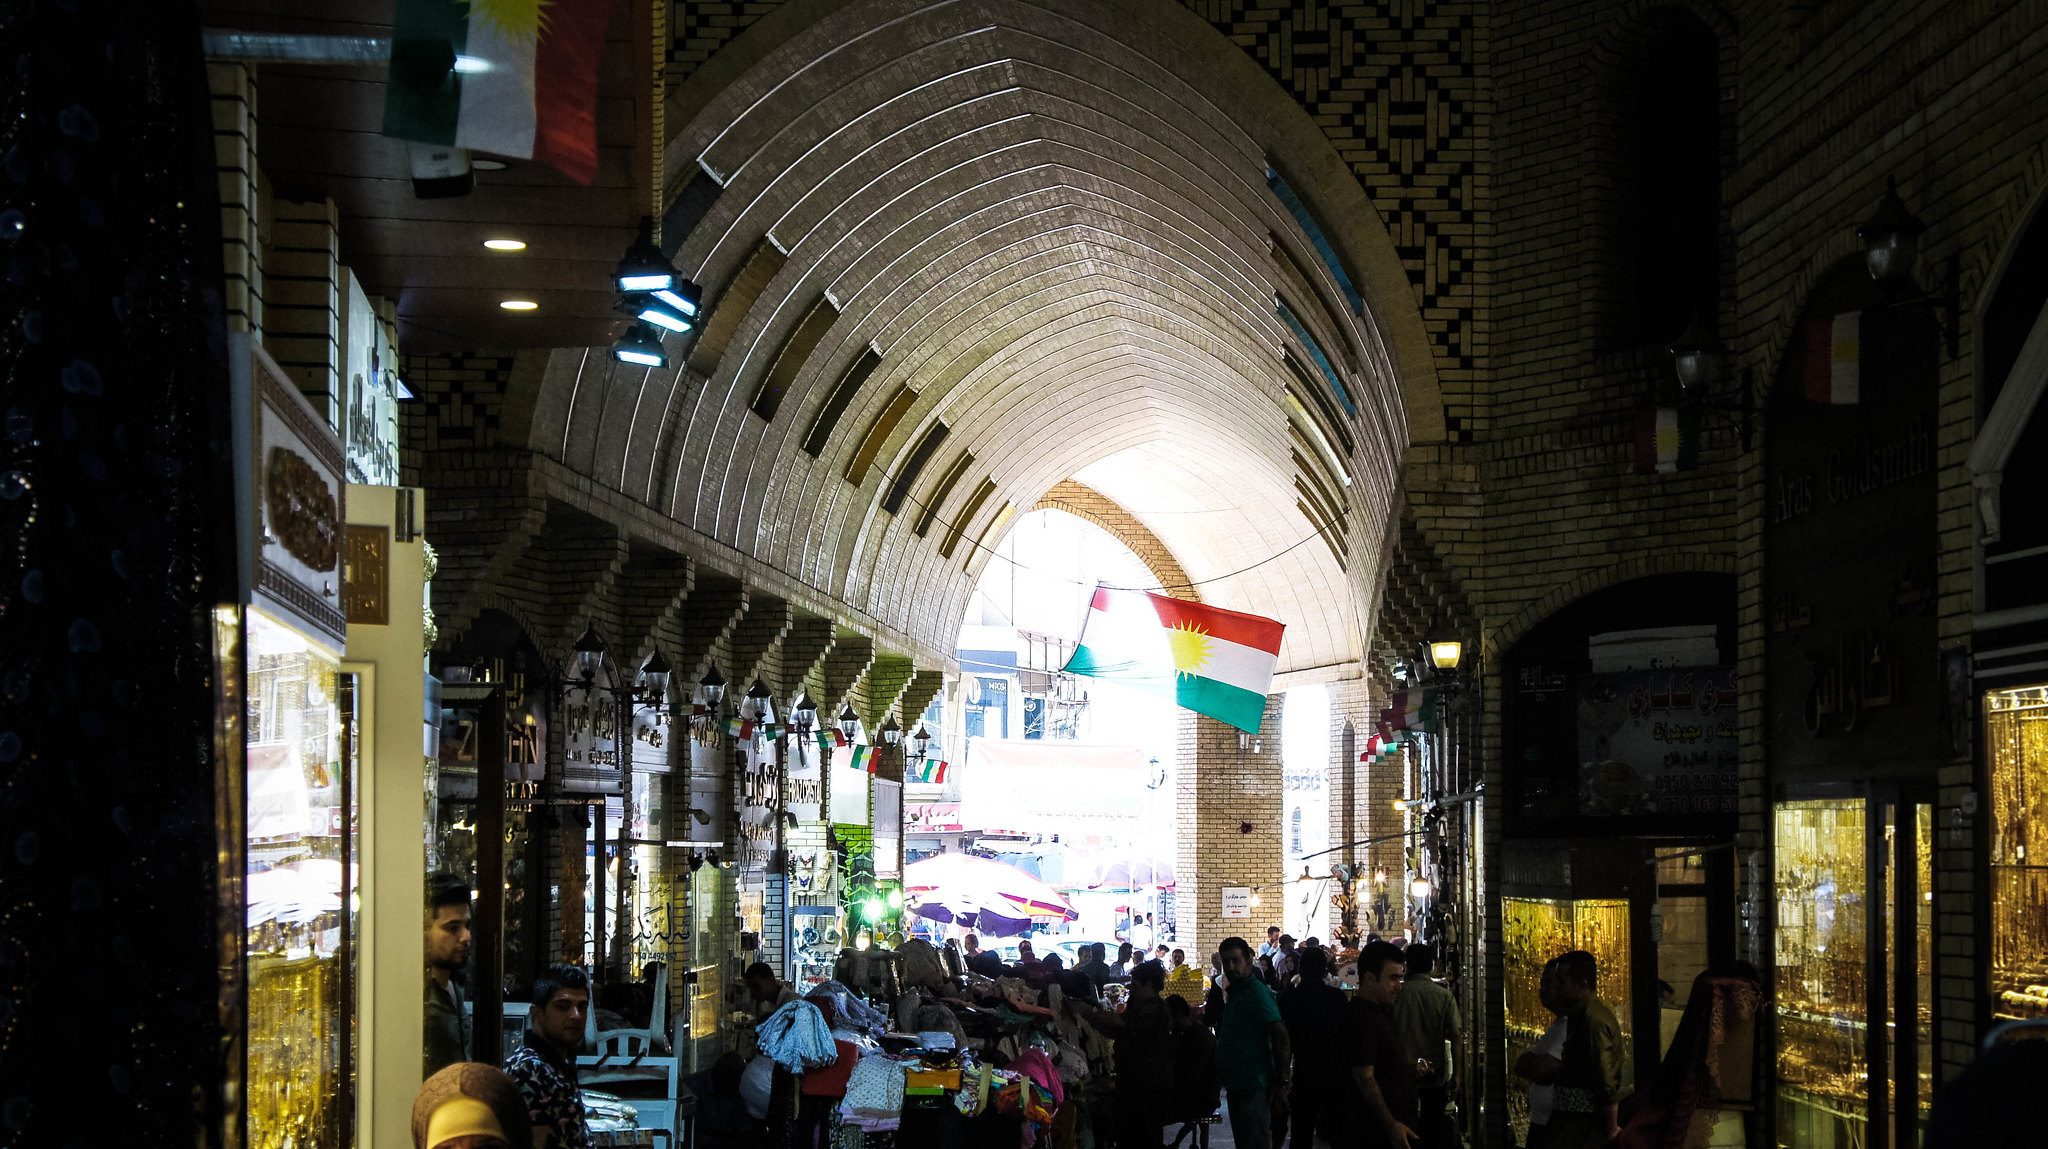 Qaysari Bazaar at Erbil Citadel